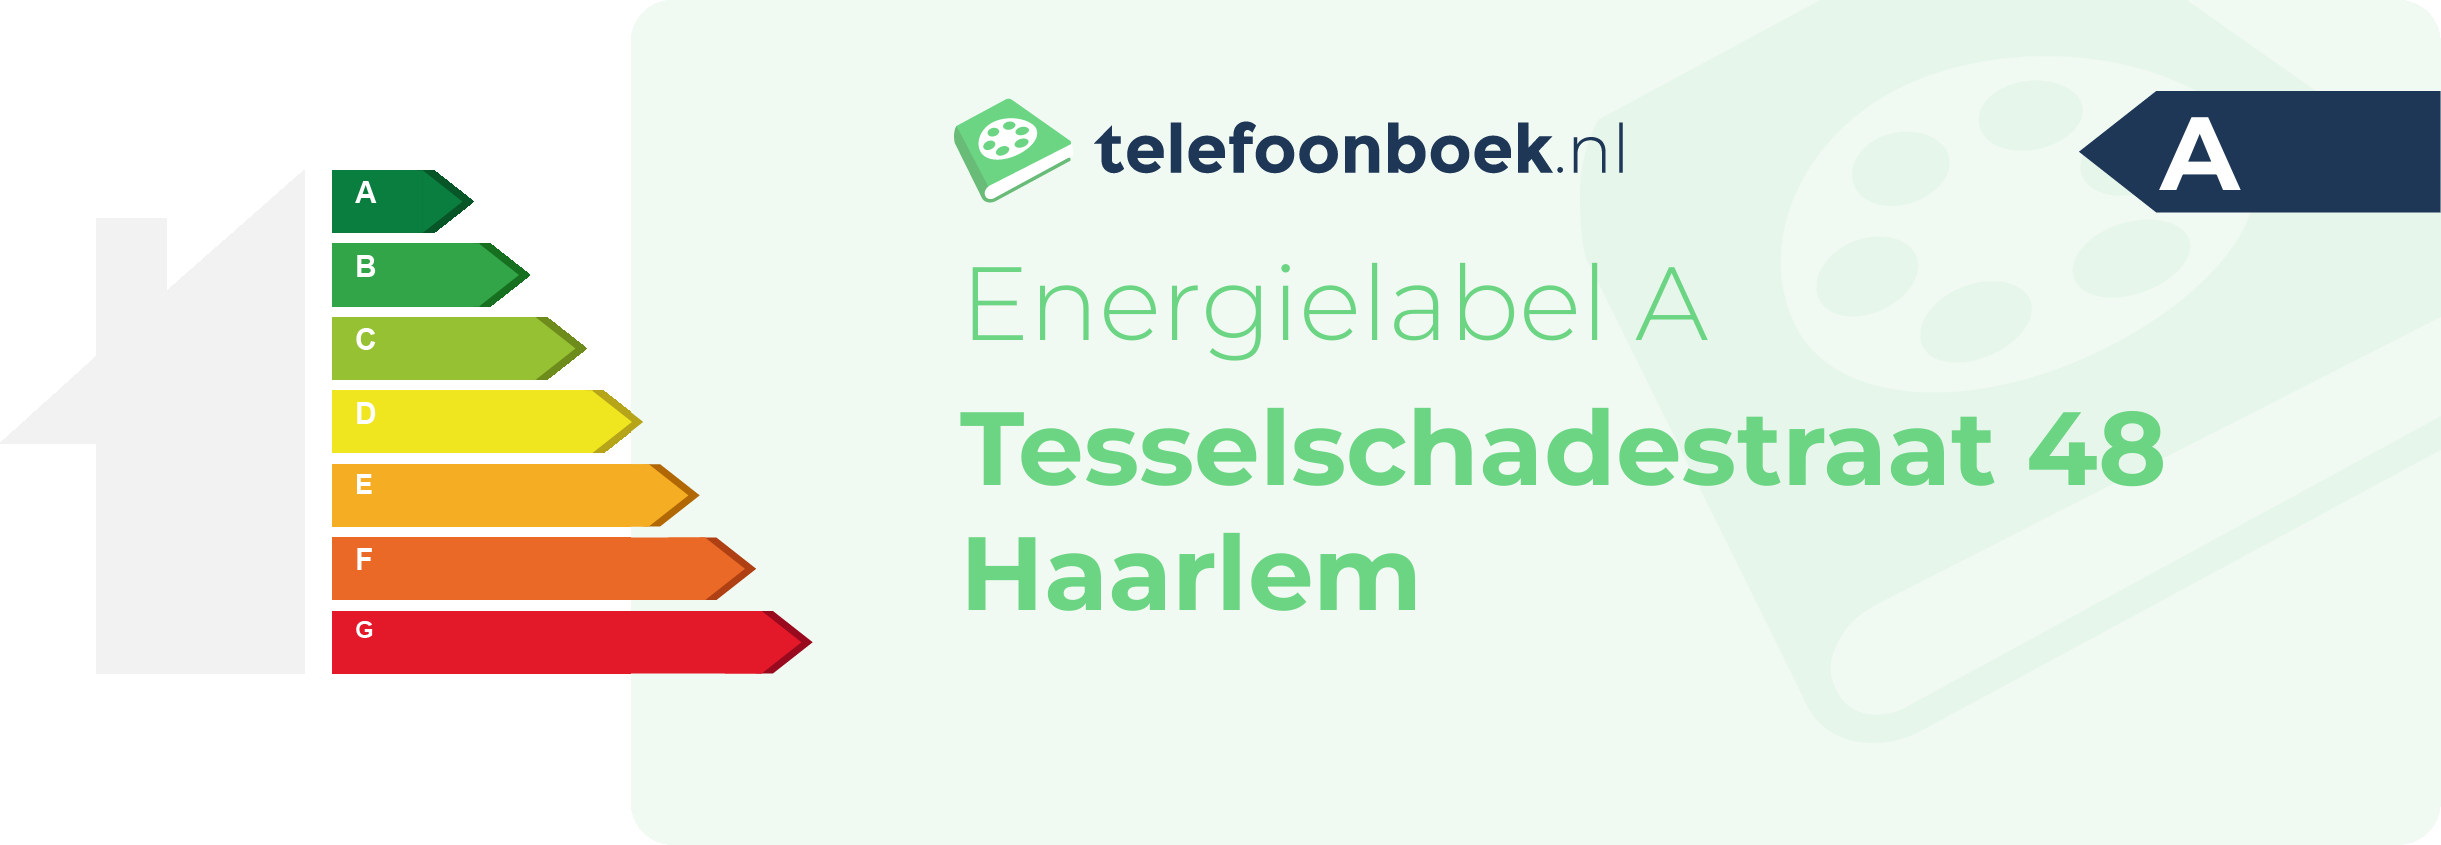 Energielabel Tesselschadestraat 48 Haarlem